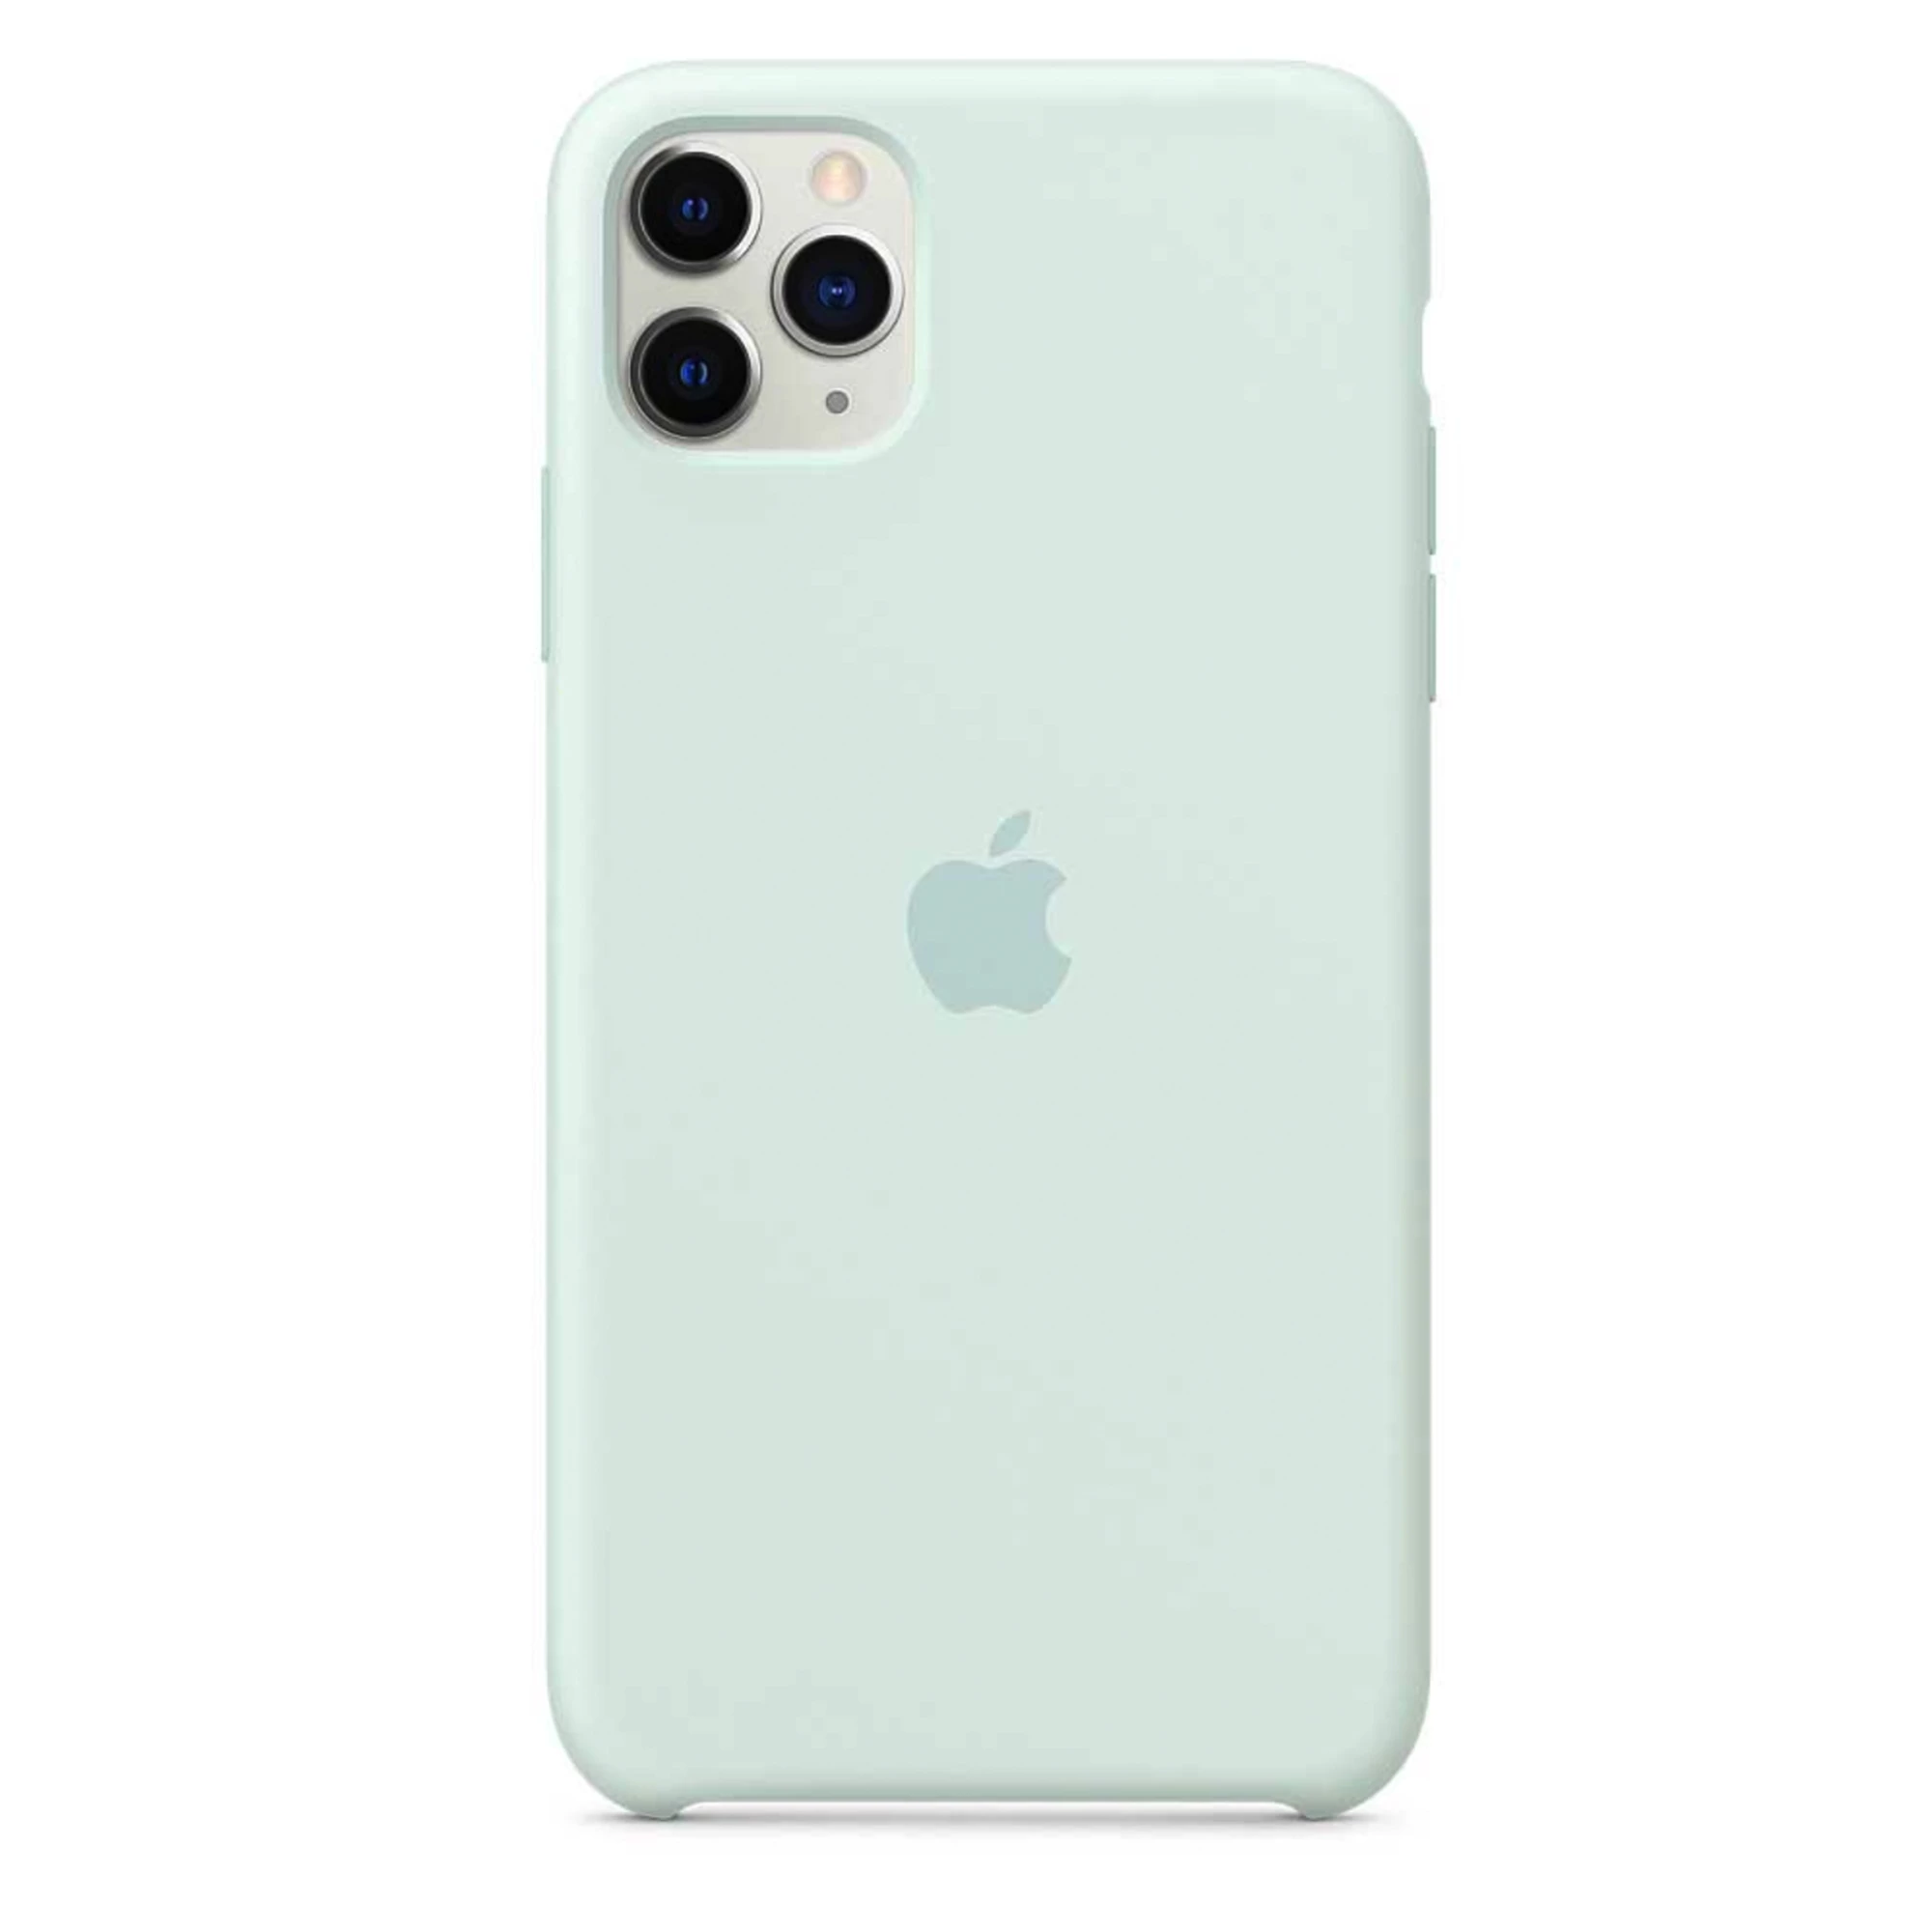 Apple iPhone 11 Pro Max Silicone Case LUX COPY - Seafoam (MZN62)